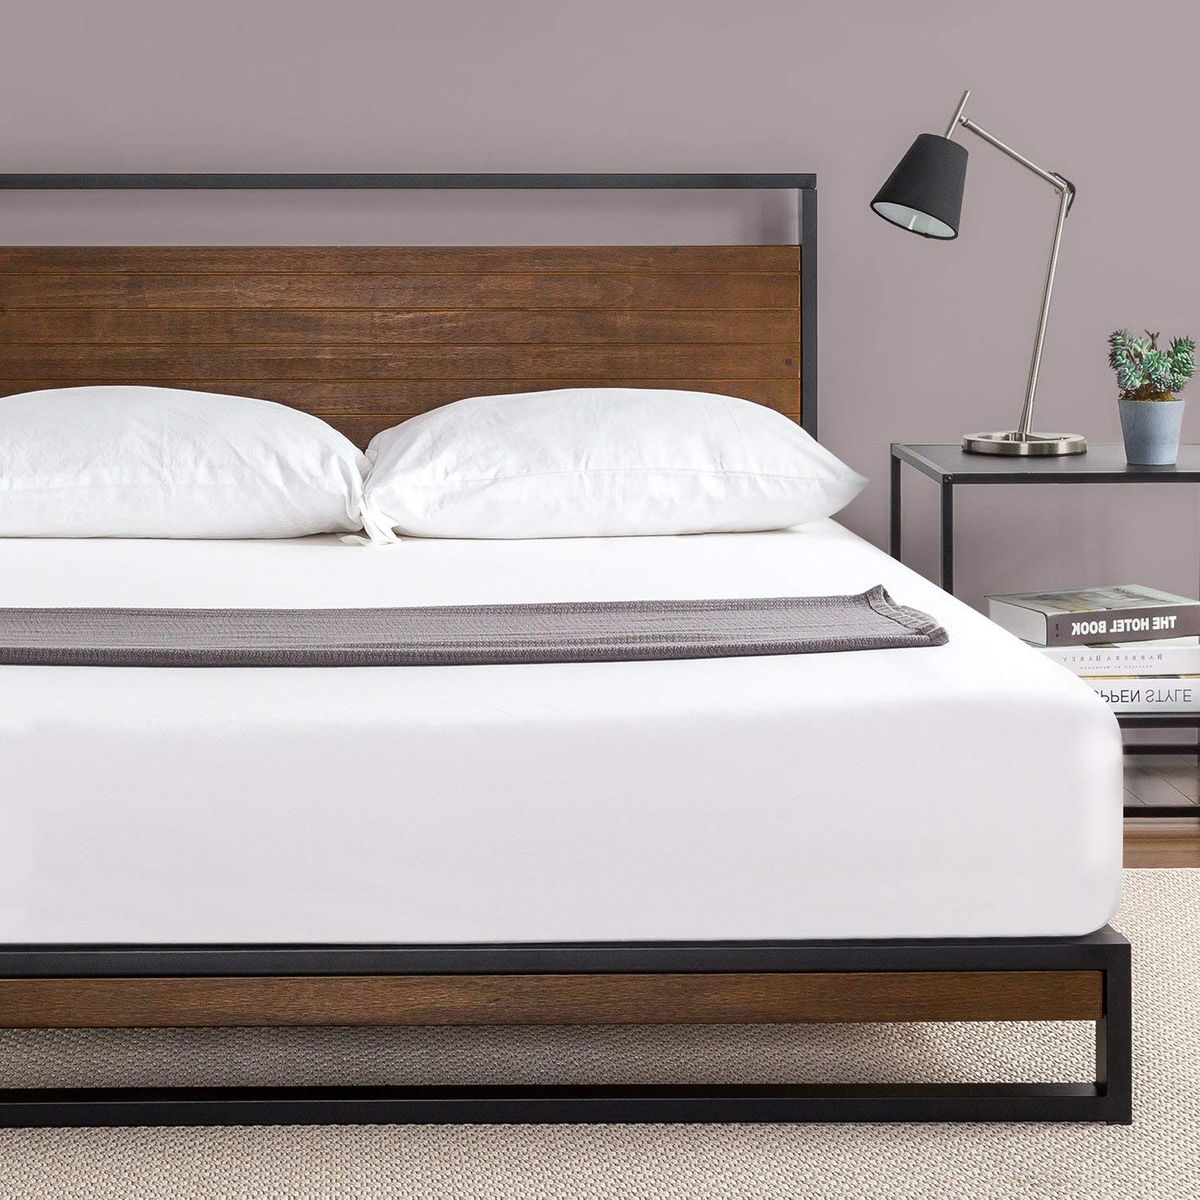 19 Best Metal Bed Frames 2020 The, Modern Steel Bed Frame